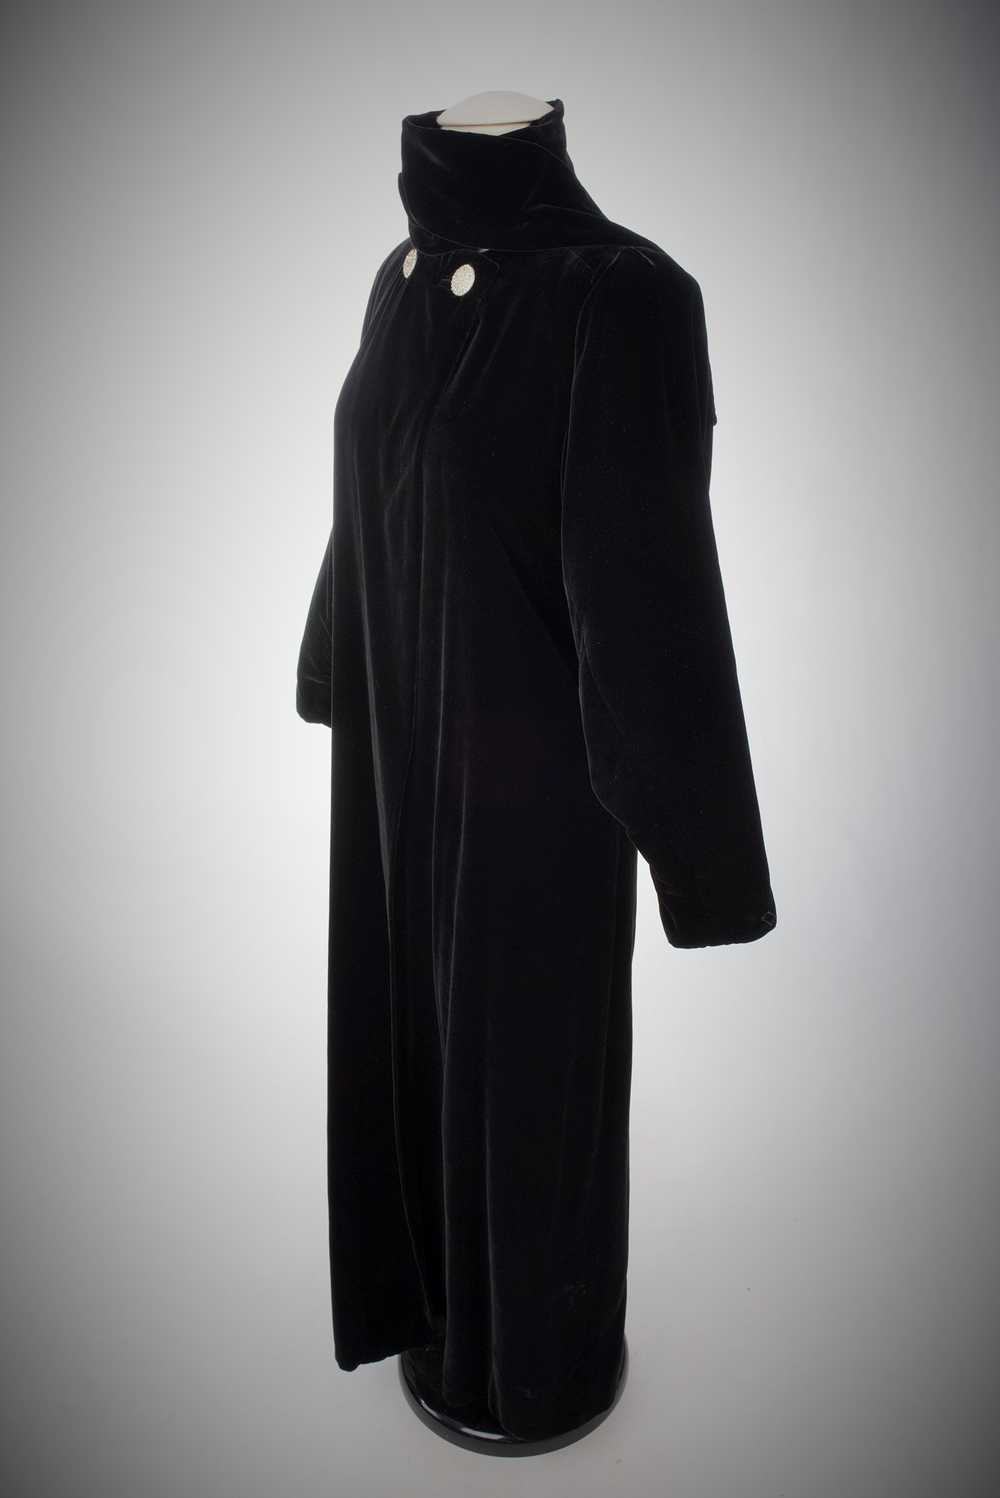 Velvet Evening Coat by Lucien Lelong Circa 1937 - image 11